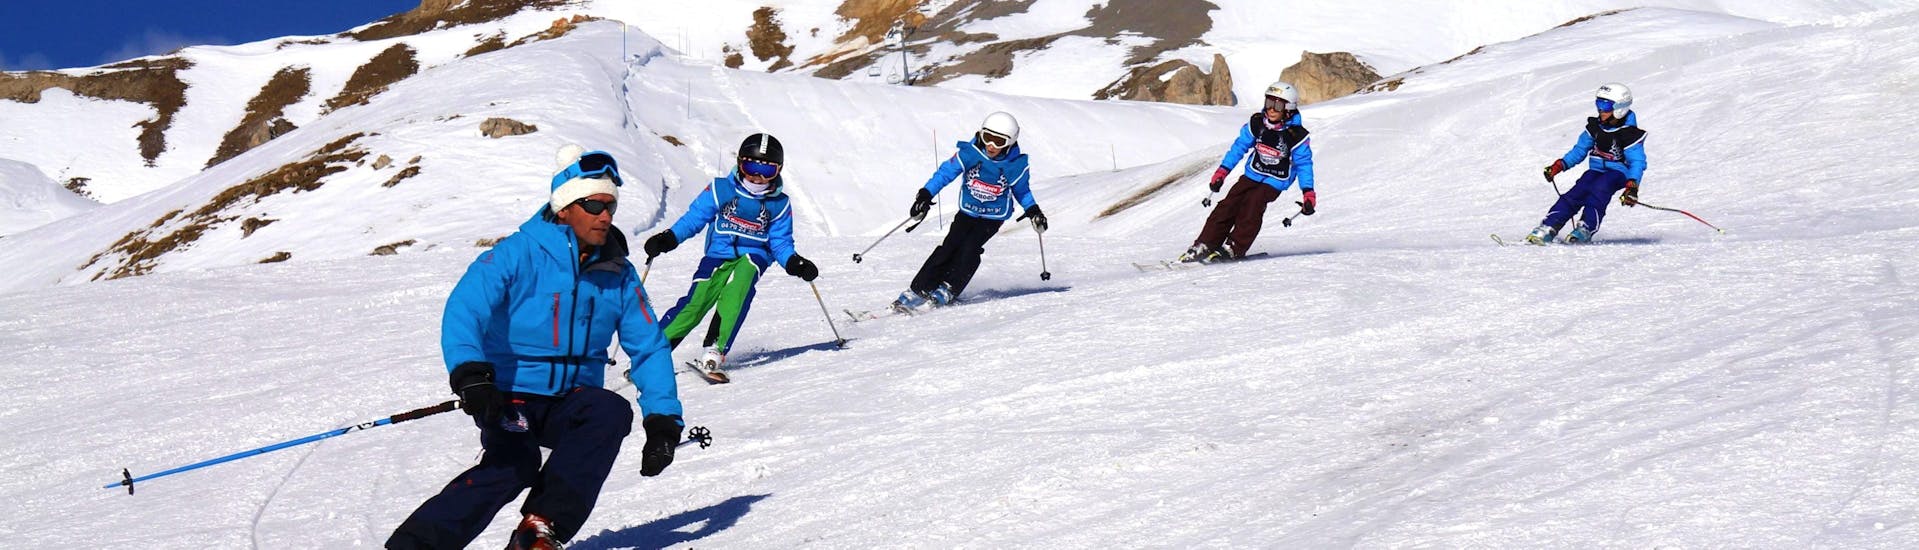 Los jóvenes esquiadores siguen a su instructor de la escuela de esquí Snocool en Sainte-Foy-Tarentaise, en una pendiente nevada, durante sus clases de esquí para niños "Pop 6" (10-17 años) - Avanzado.